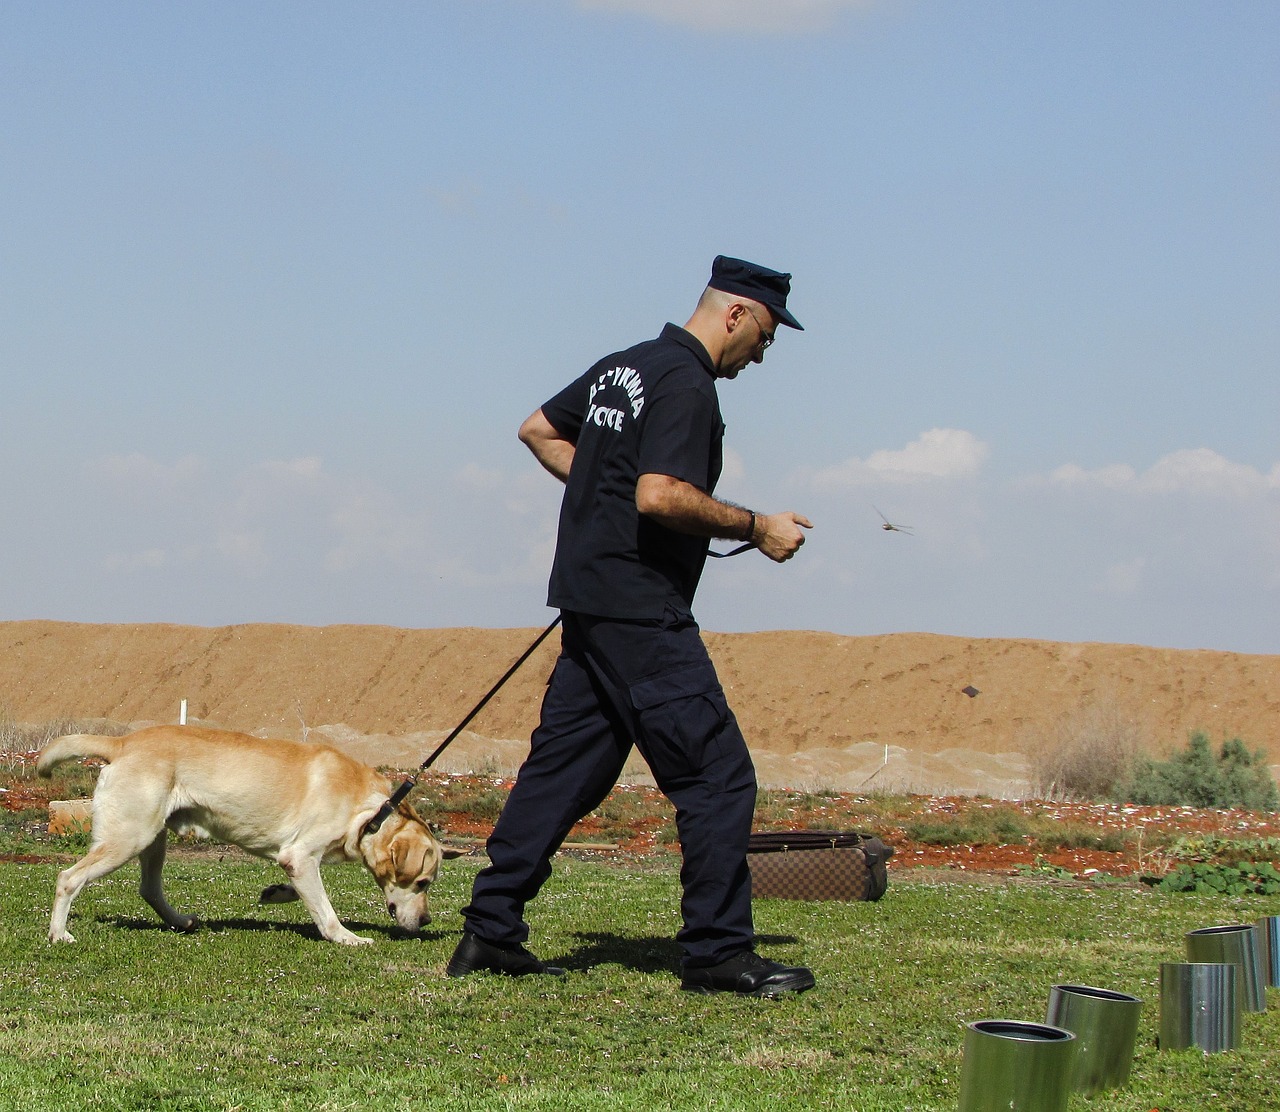 Dogs 4 Soldiers es uno de los proyectos en Israel que buscan ayudar a los veteranos de guerra. Foto: Dimitris Vetsikas/Pixabay.